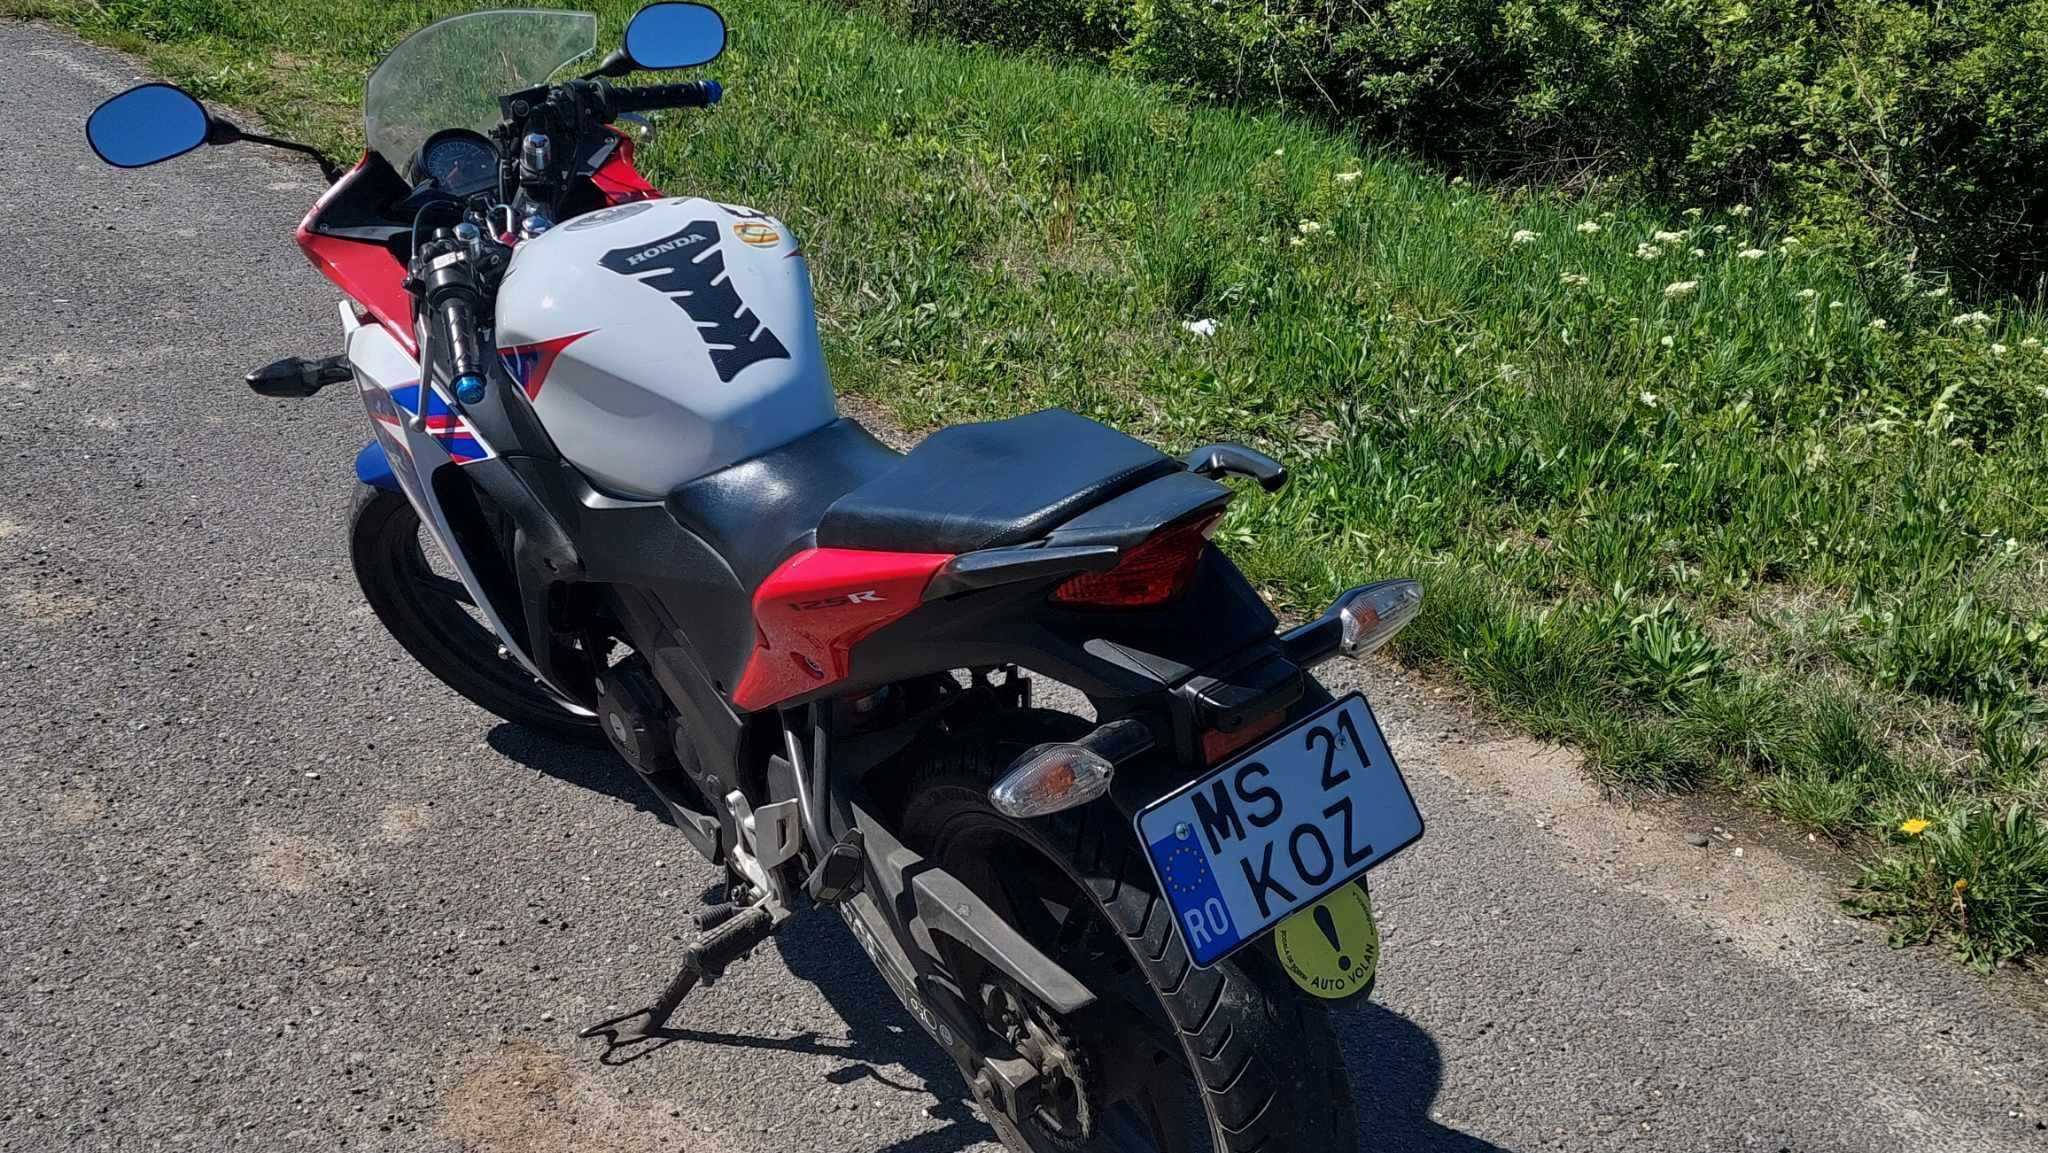 Motocicleta Honda cbr125r